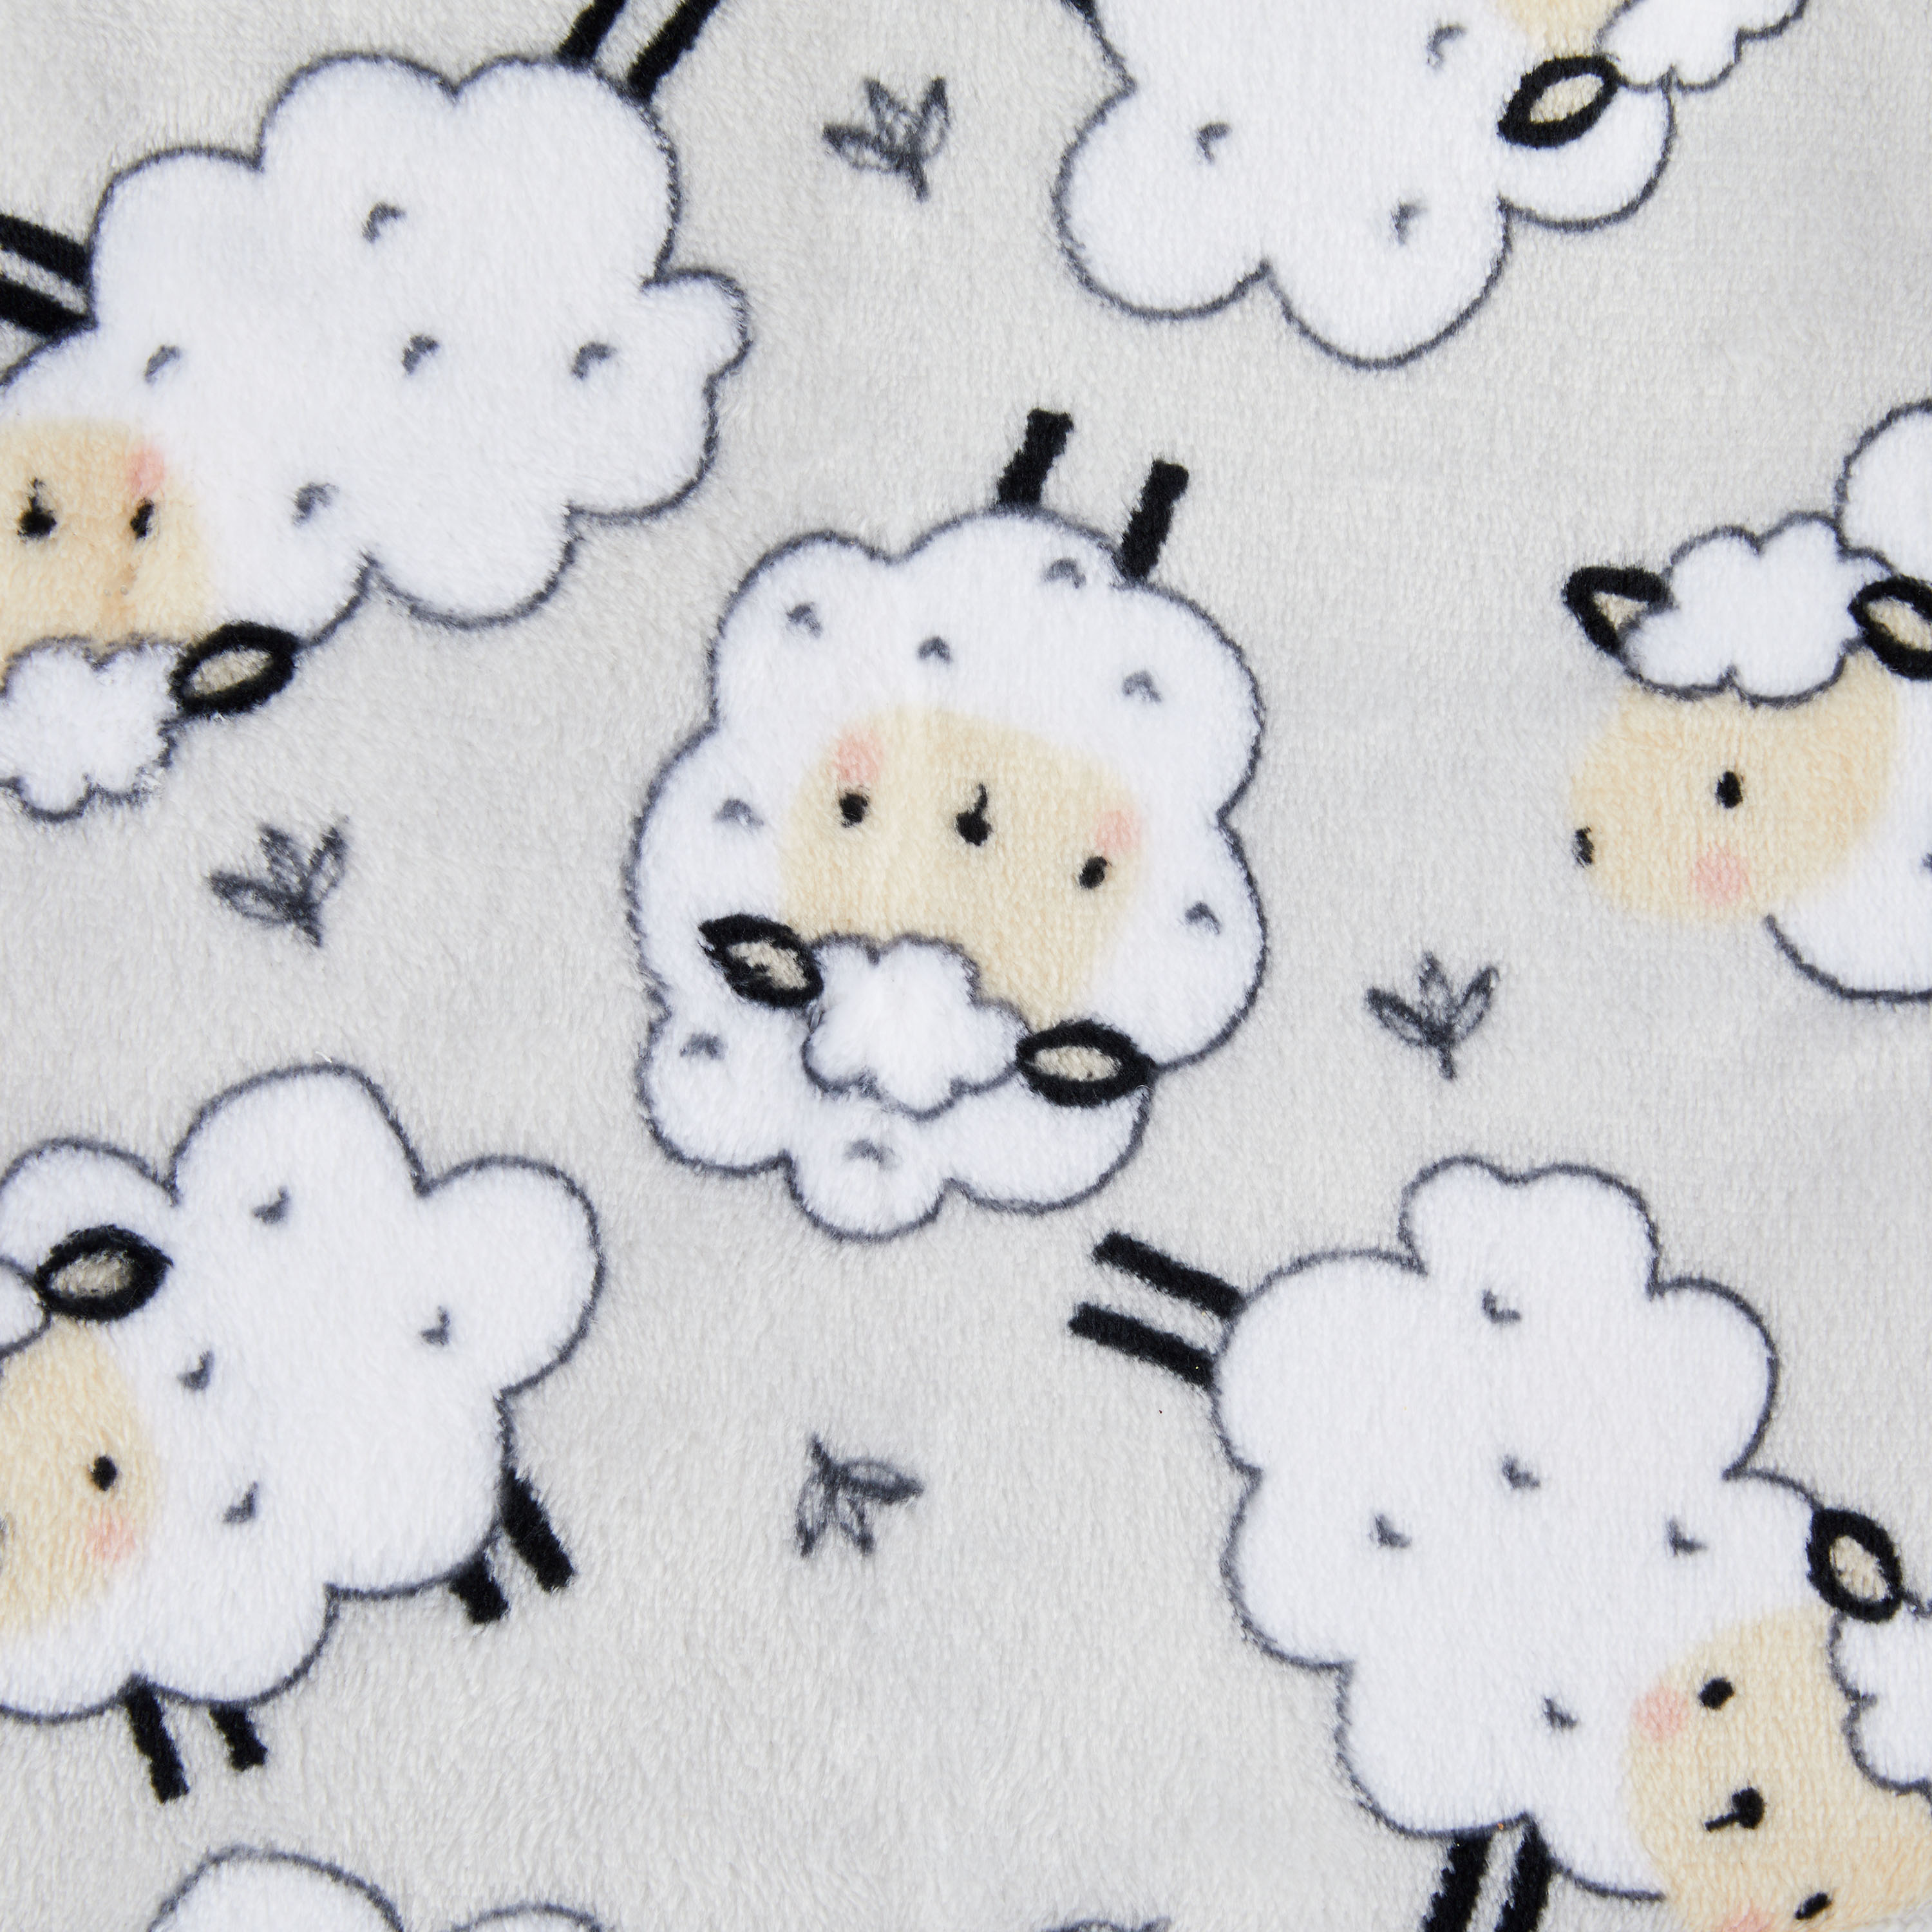 Parent's Choice Grey Sheep Plush Baby Blanket,Infant Unisex, 30" x 36" - image 5 of 8